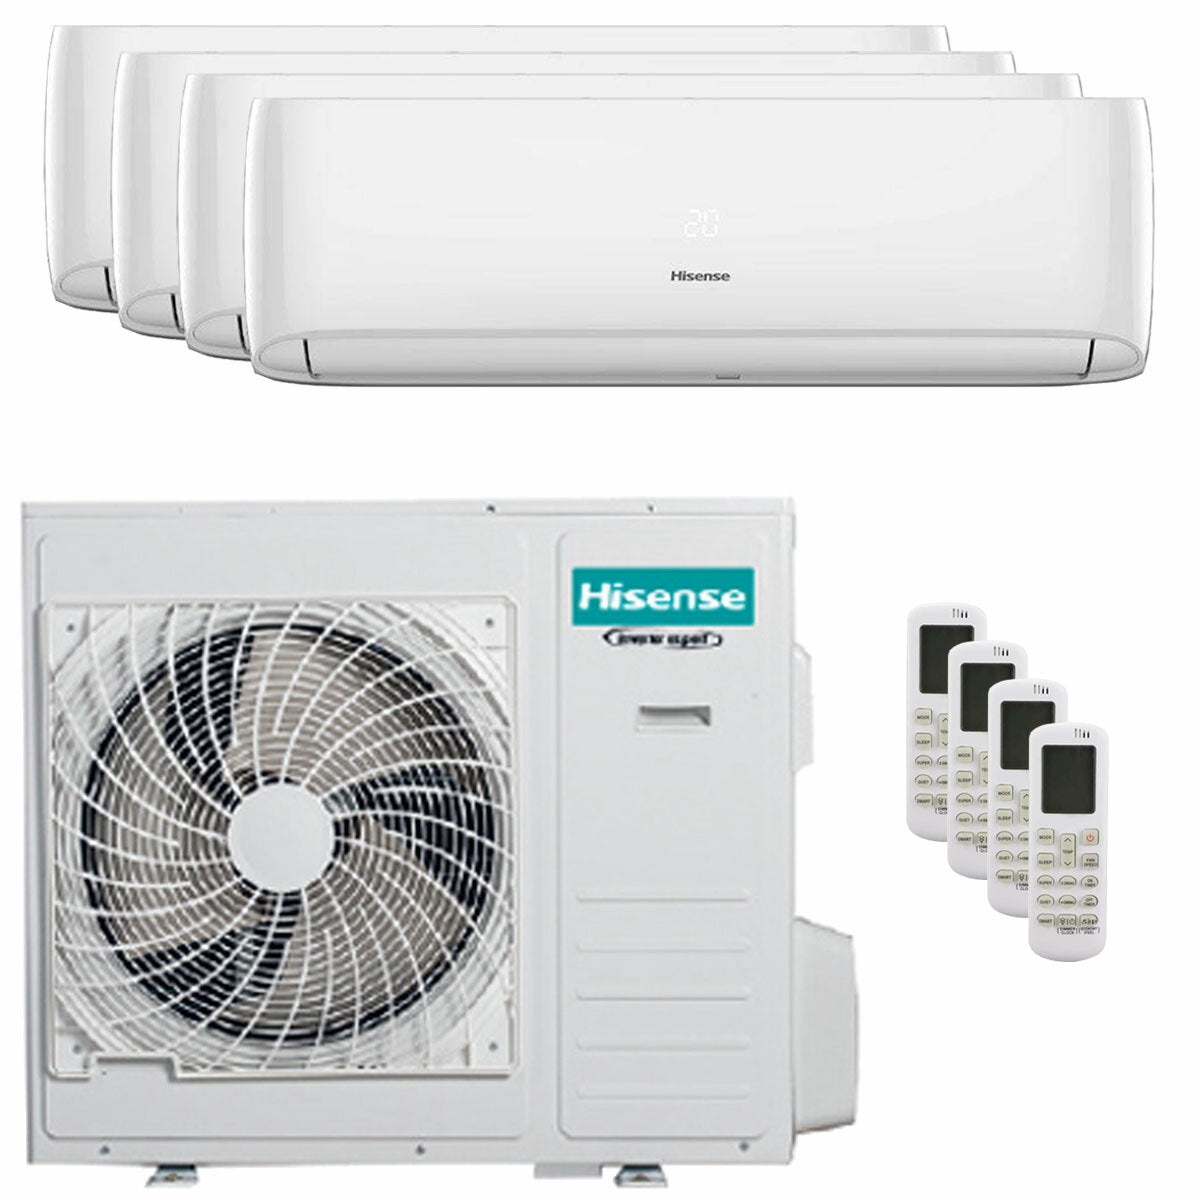 Hisense Hi-Comfort quadri split air conditioner 12000+12000+12000+12000 BTU inverter A++ wifi outdoor unit 10.0 kW